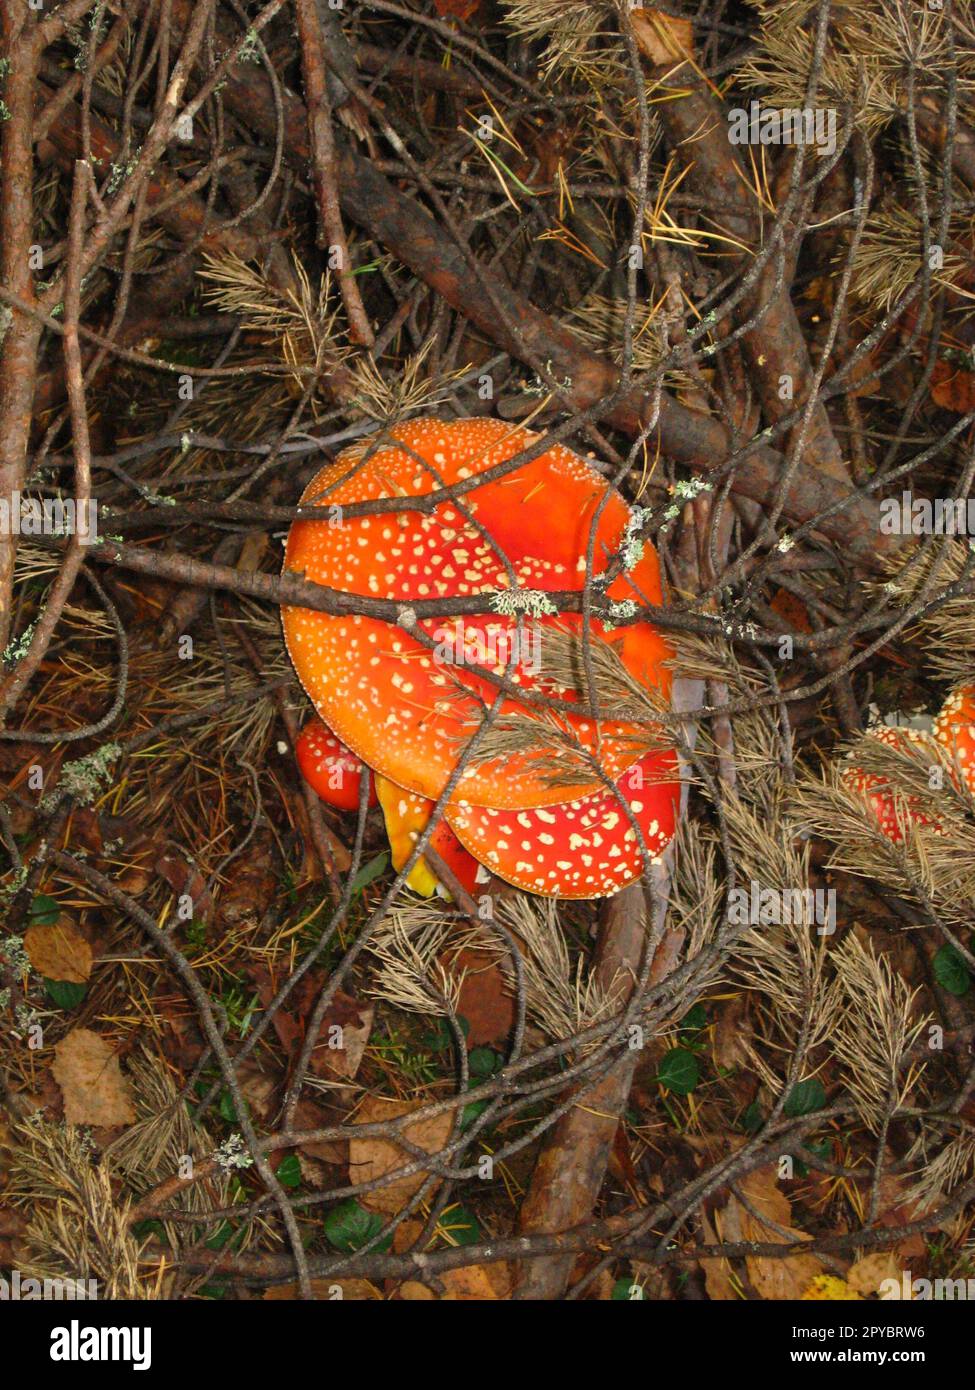 Fliegenagarisch. Mehrere Pilze mit roten Hüten und weißen Punkten. Waldpilze unter trockenen Fichtenzweigen. Im Herbst liegen nasse, heruntergefallene Blätter auf dem Boden. Giftige Pilze. Gefahr für Leben und Gesundheit. Stockfoto